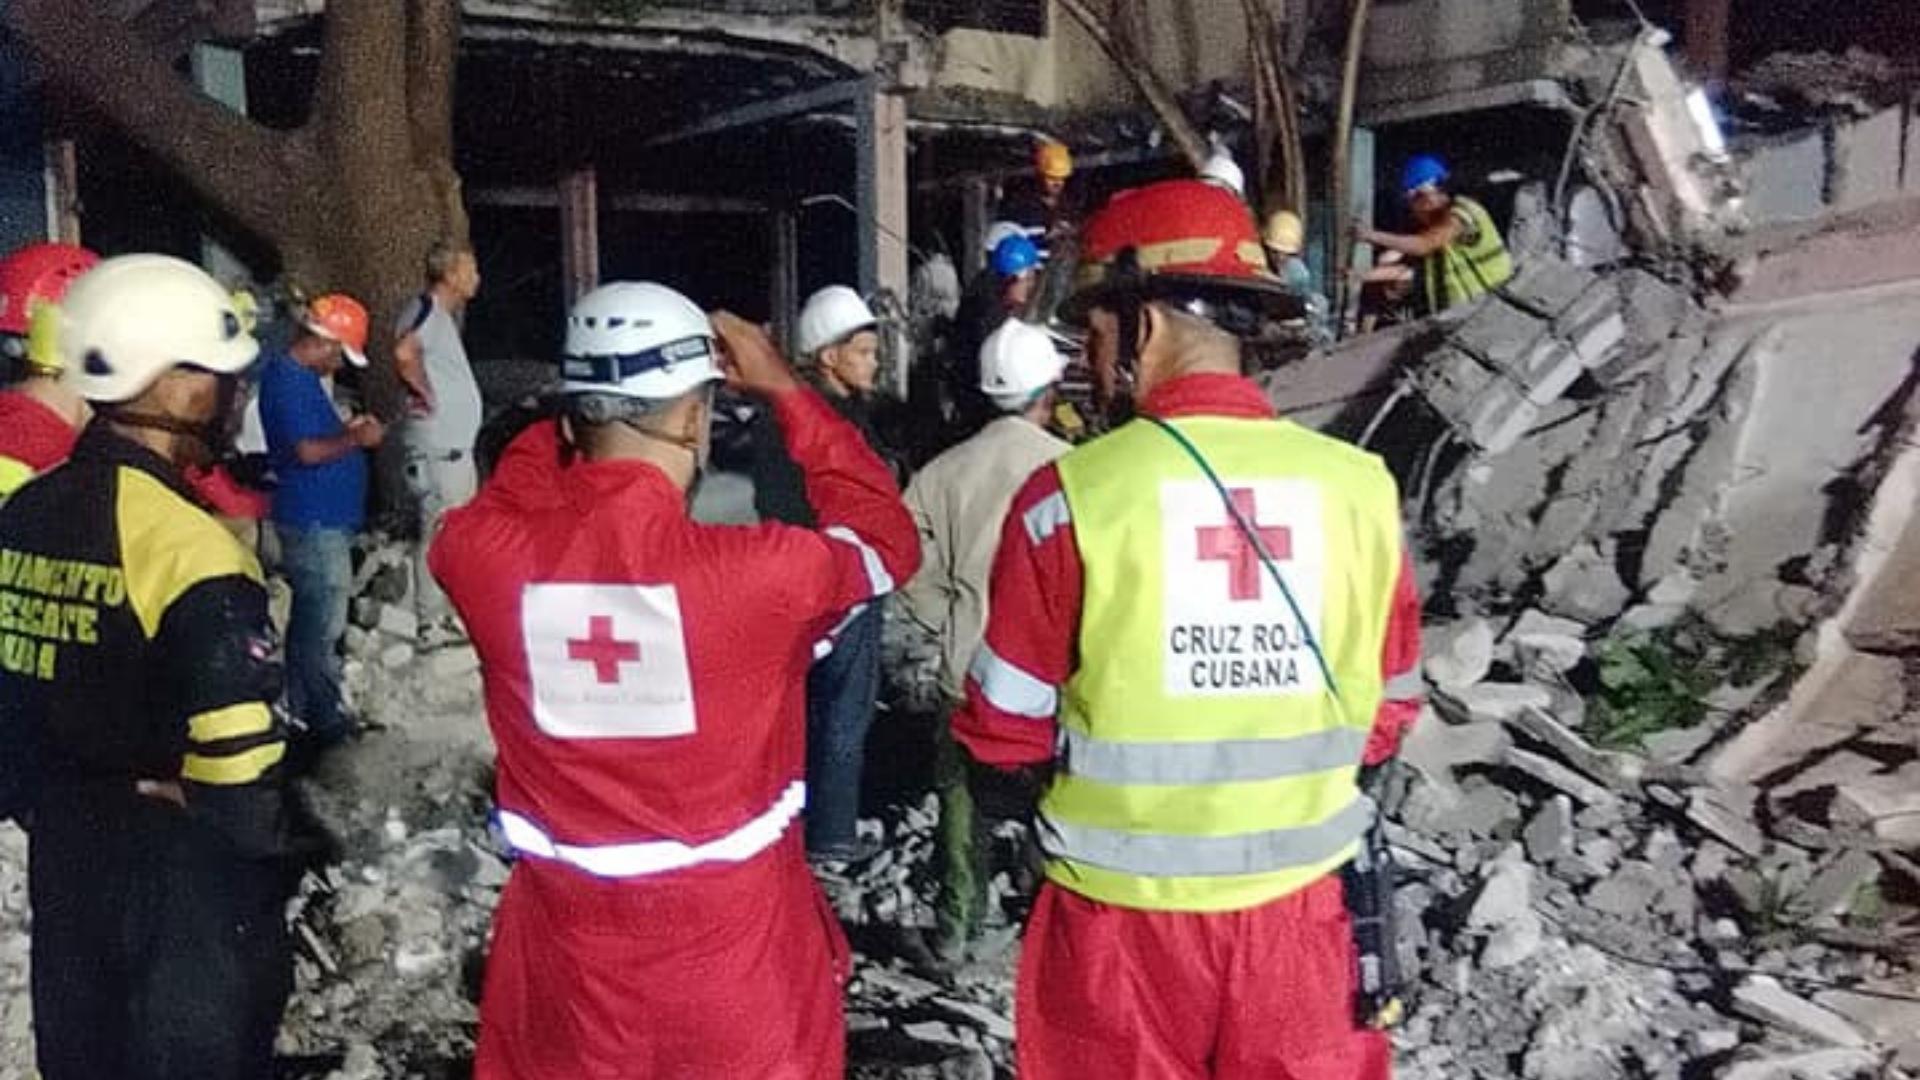 Buscan a persona bajo escombros en derrumbe en Santiago de Cuba. Foto: Aris Arias